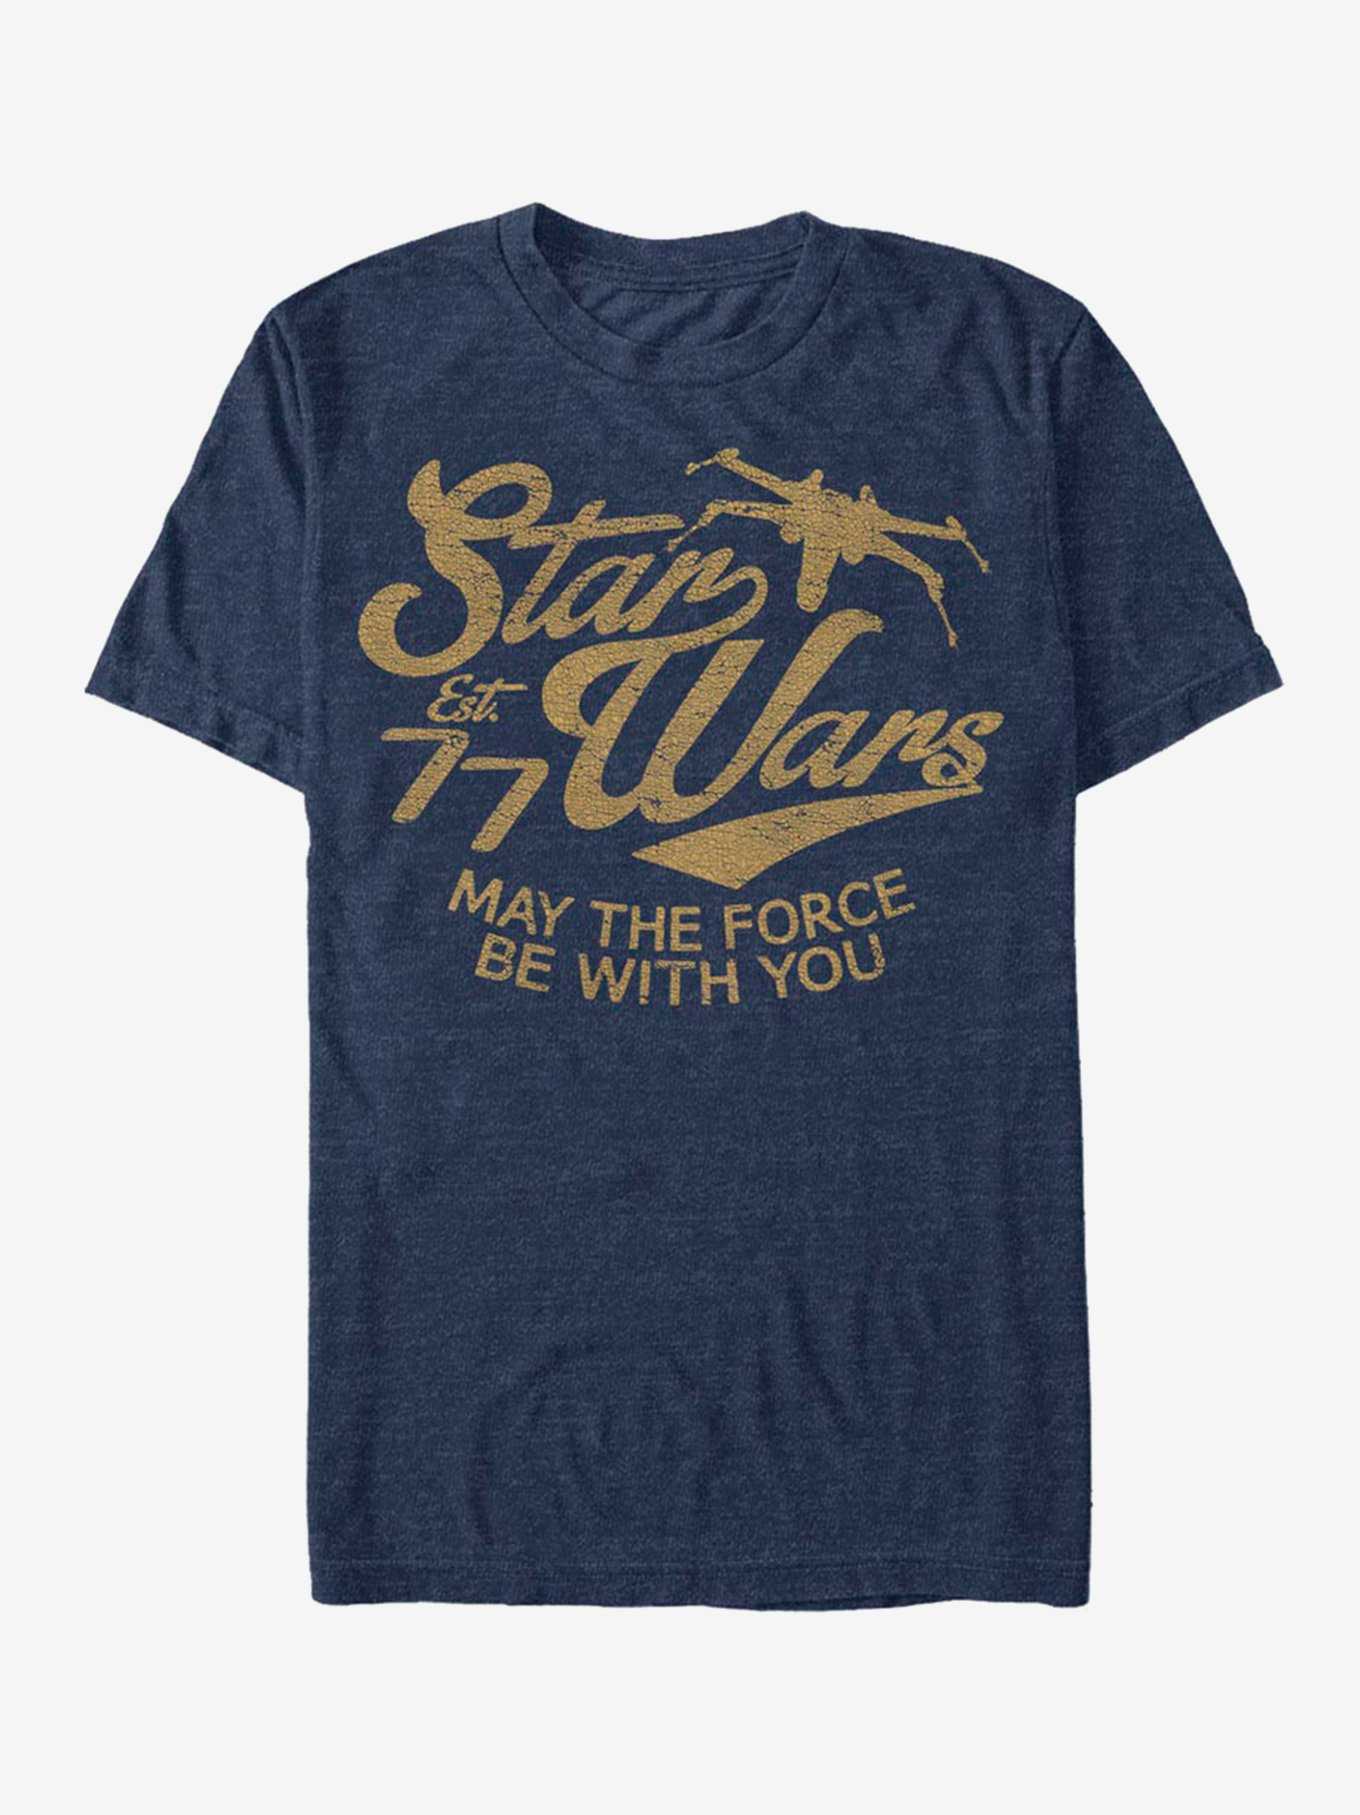 Star Wars Established 77 X-wing Force T-Shirt, , hi-res